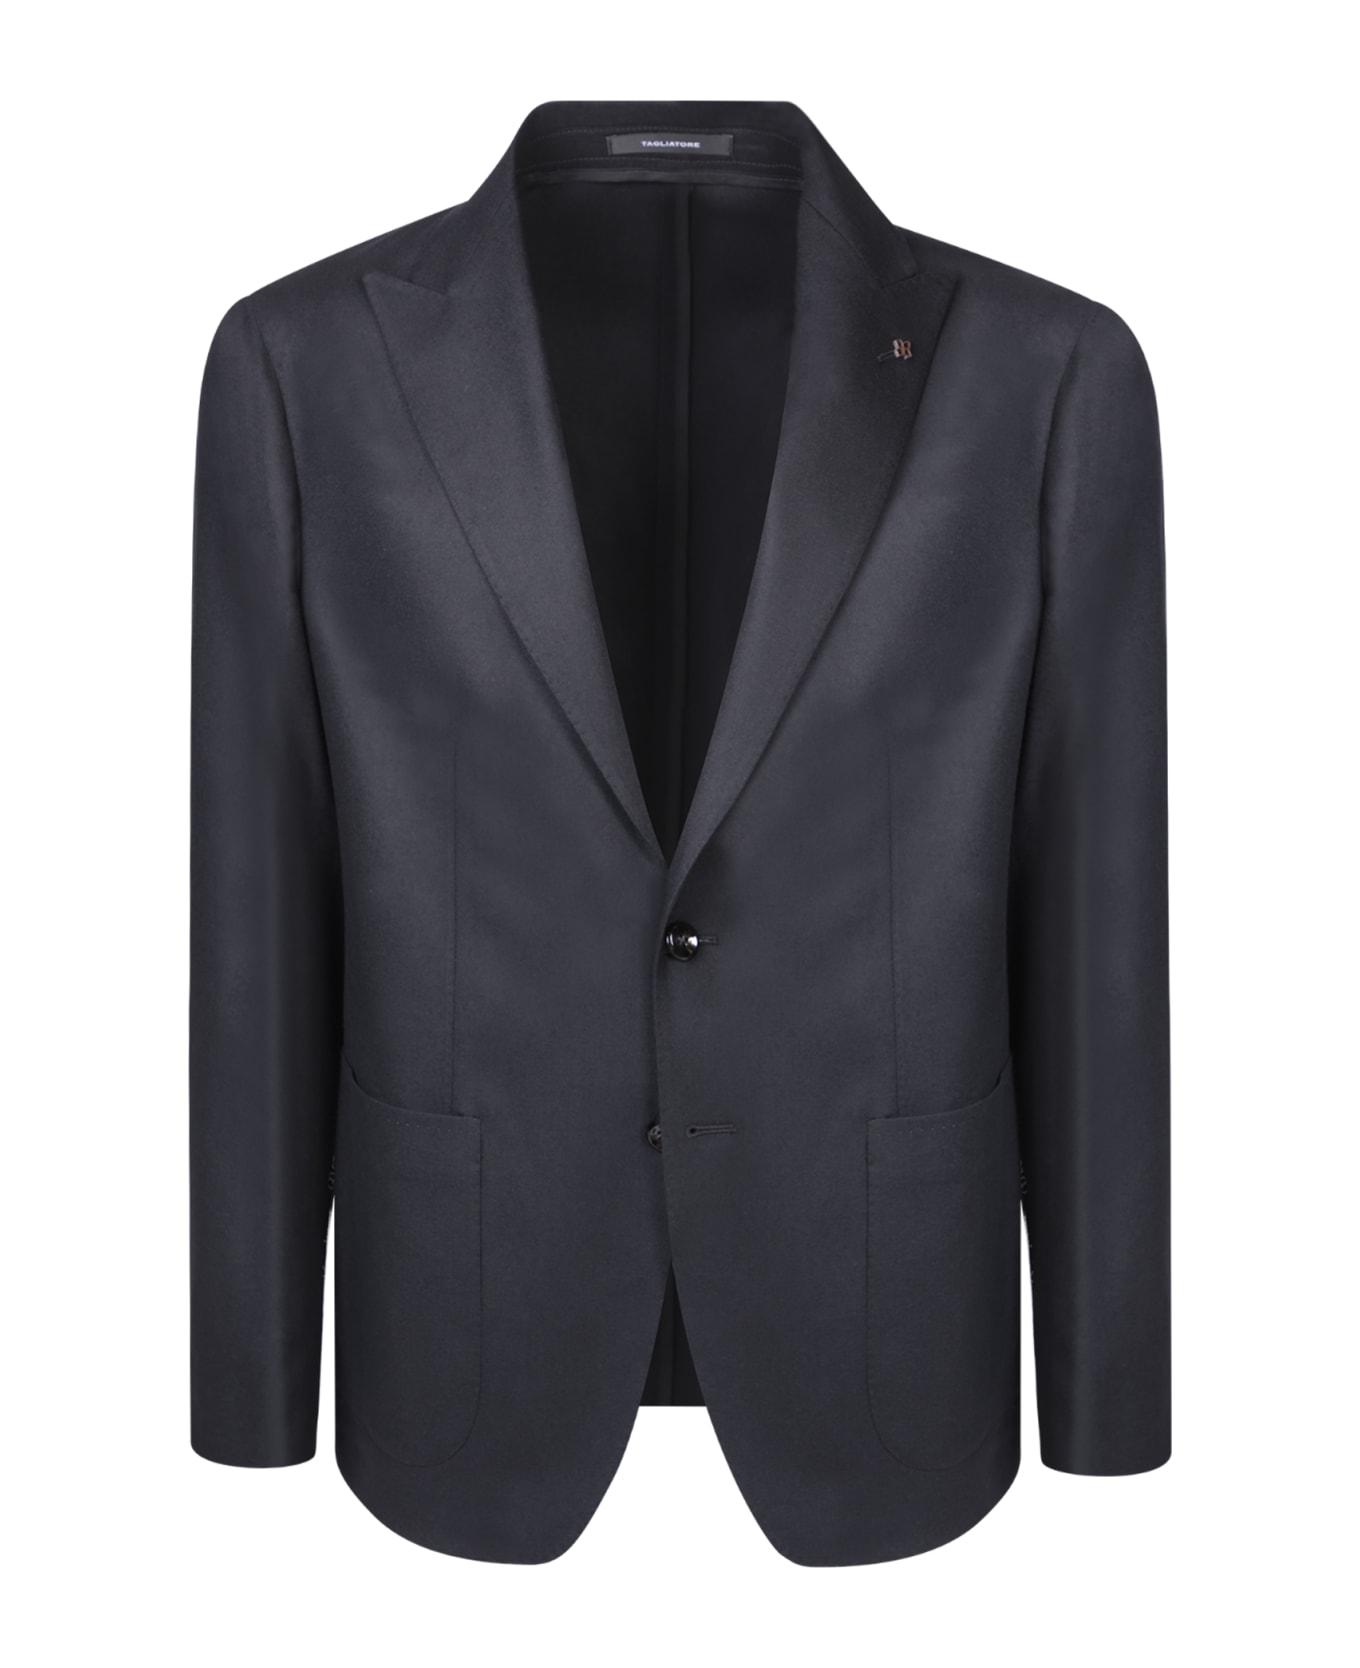 Tagliatore Single-breasted Jacket Black Suit - Black